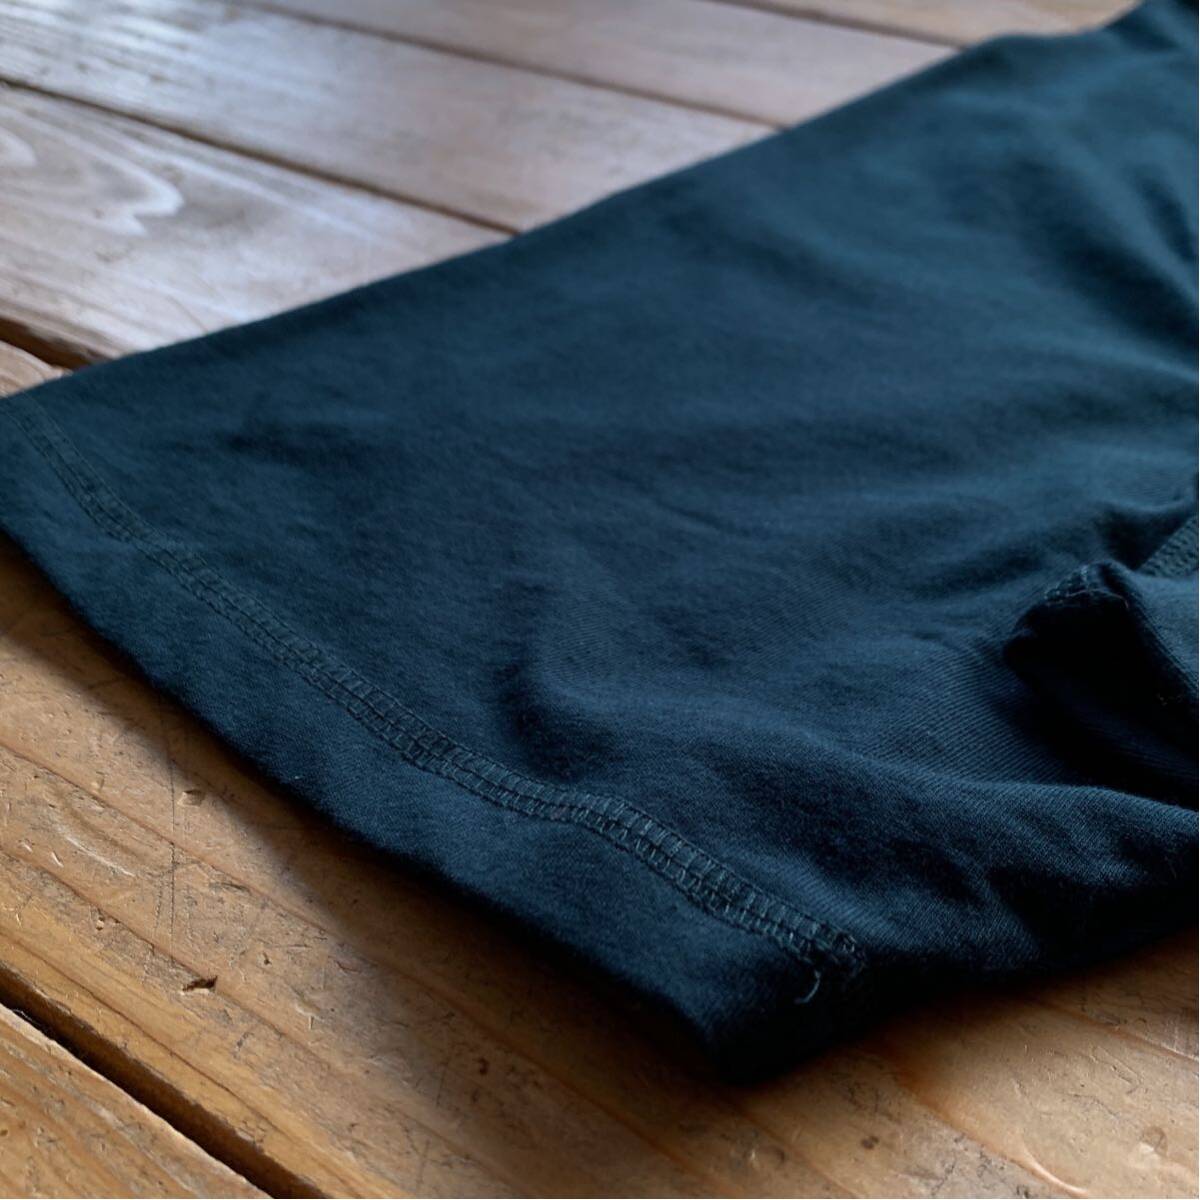 新品 CARHARTT カーハート 半袖Tシャツ メンズ 2XL ビッグサイズ ダークグリーン ワンポイント FASTDRY レギュラー タグ付き未使用品 T2457_画像8